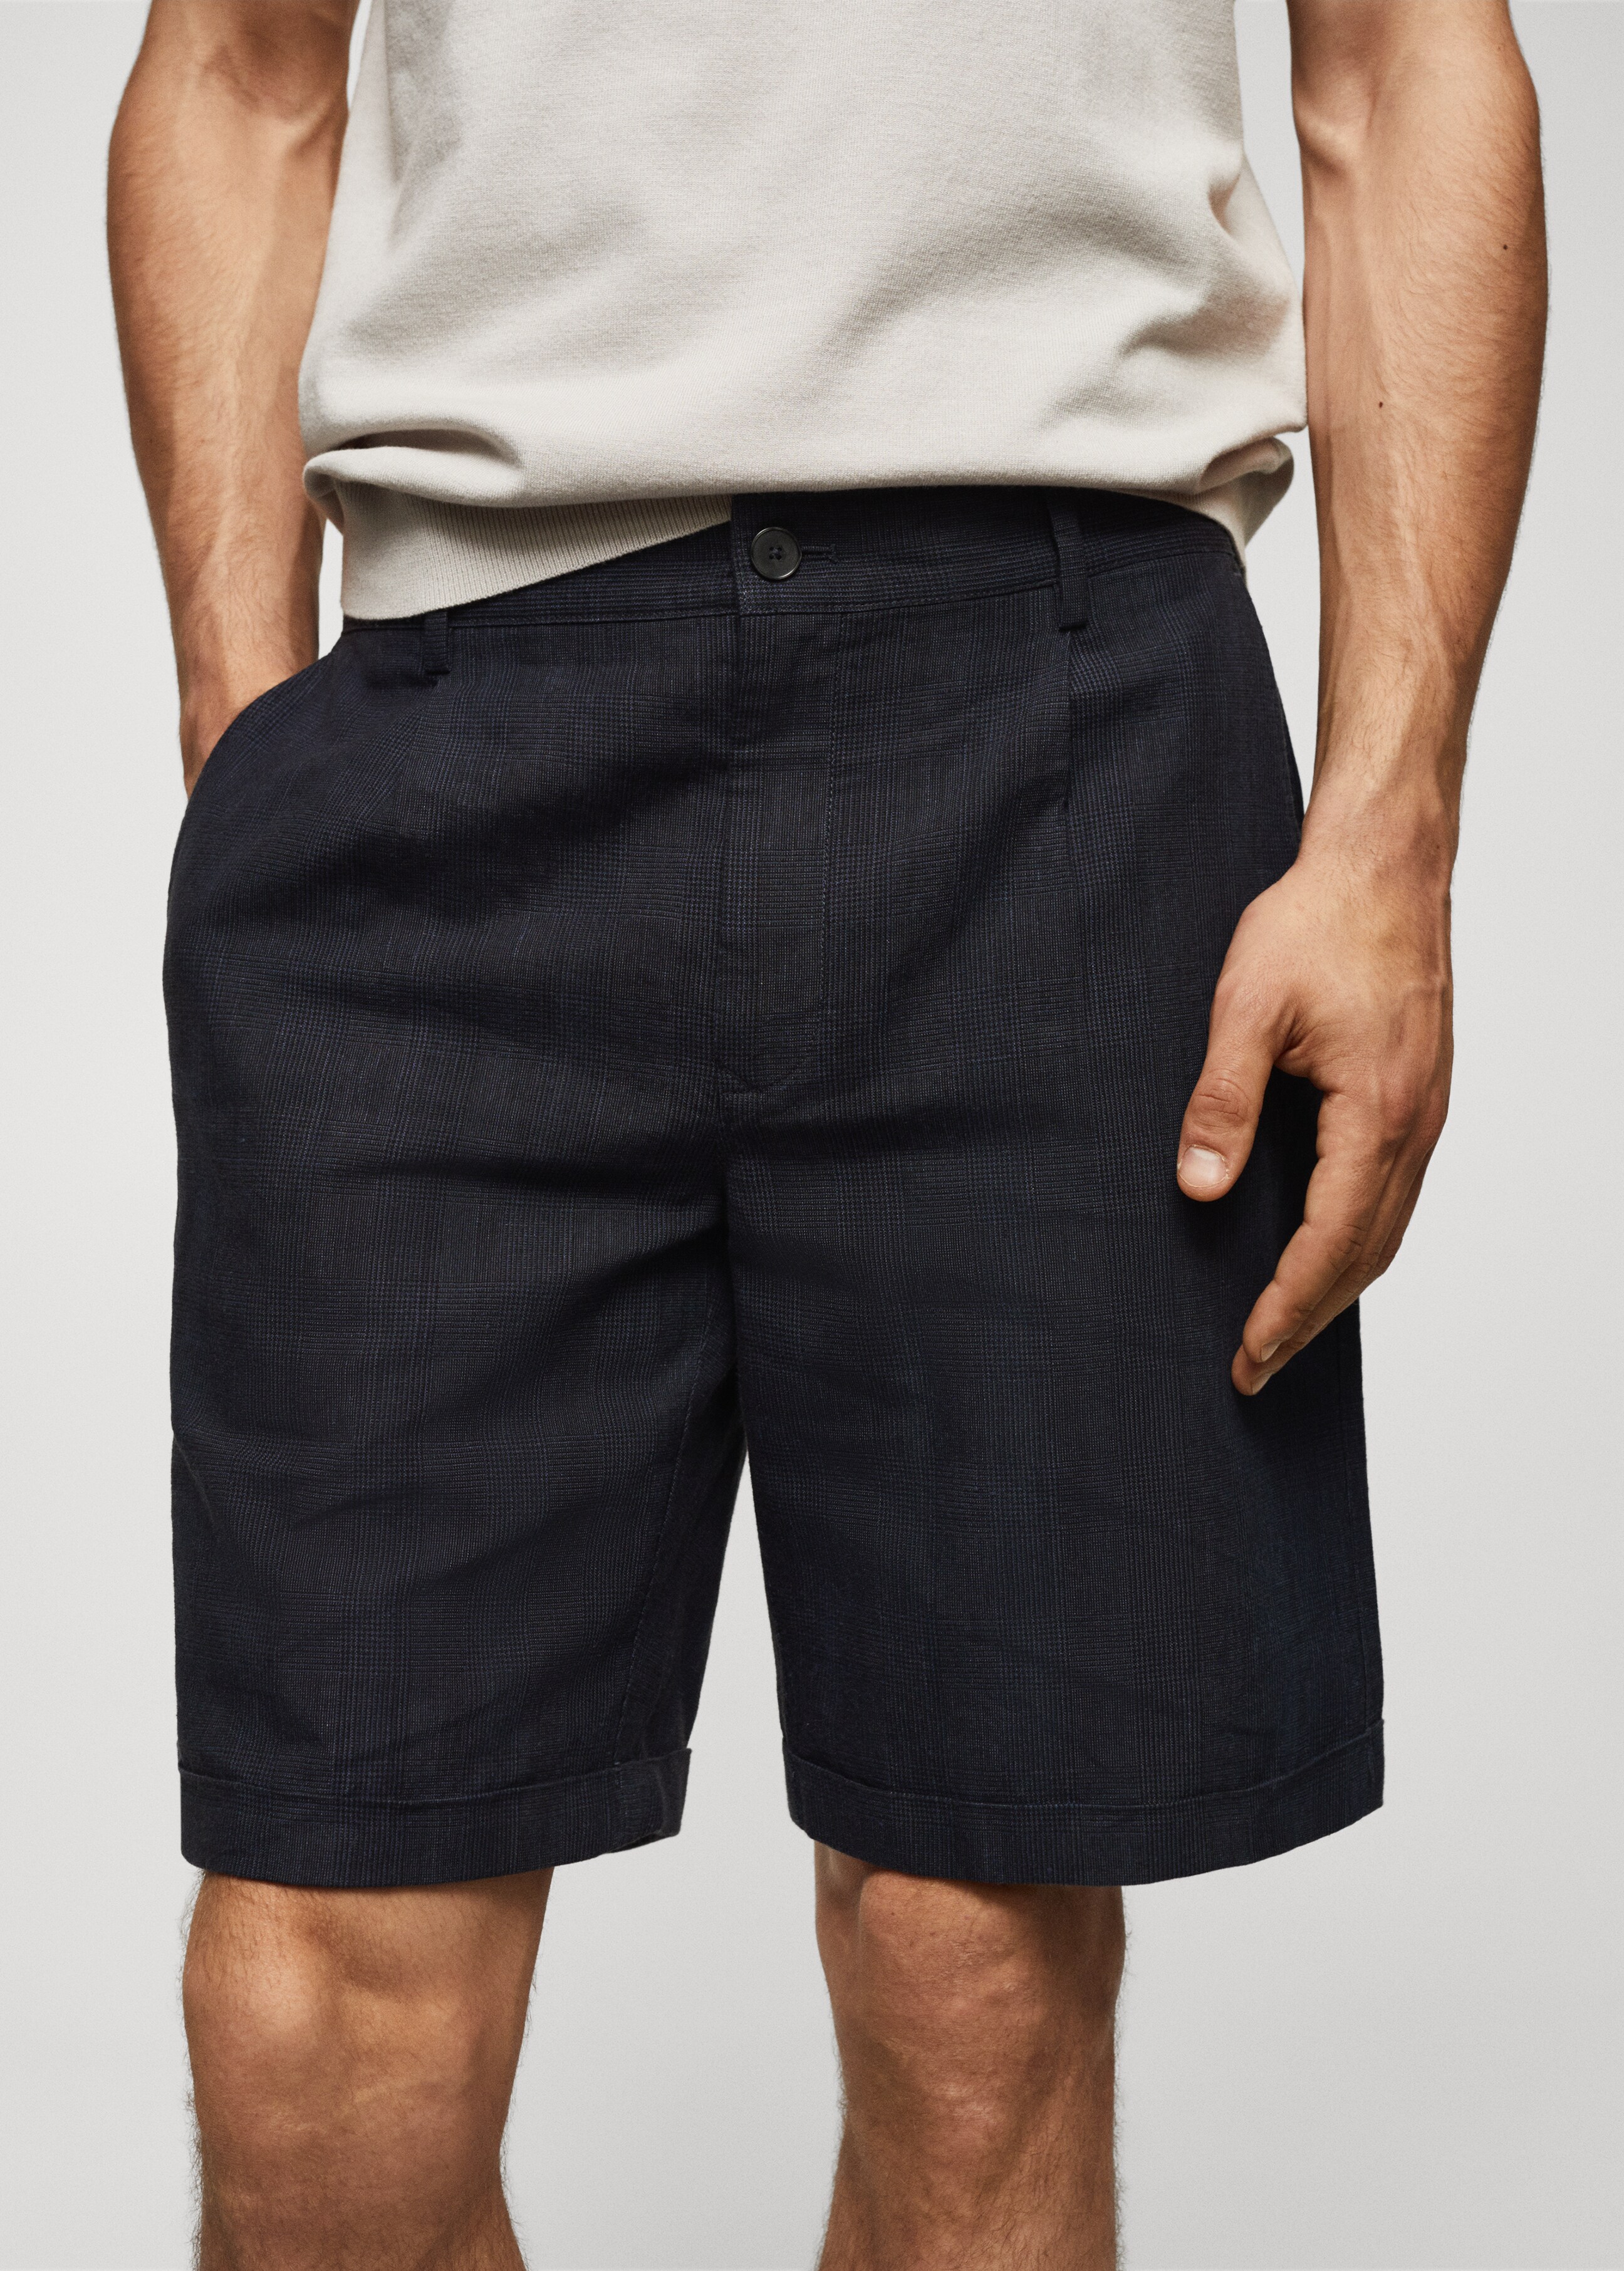 Bermuda-Shorts aus Baumwoll-Leinen mit Prince-of-Wales-Check-Muster - Detail des Artikels 1